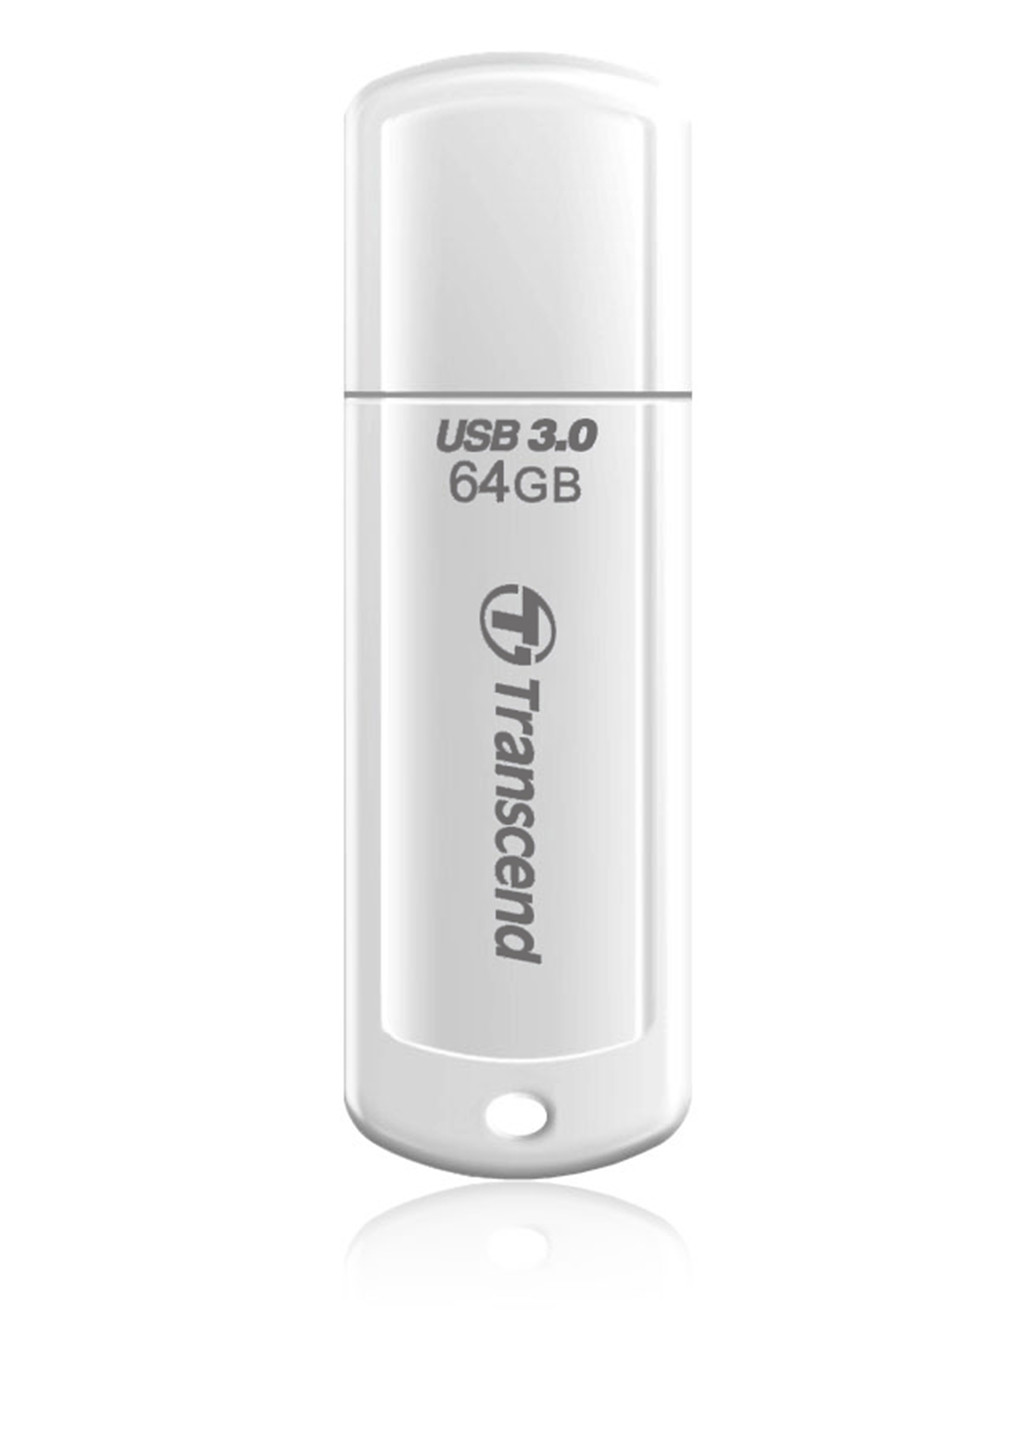 Флеш память USB JetFlash 730 64GB USB 3.0 White (TS64GJF730) Transcend флеш память usb transcend jetflash 730 64gb usb 3.0 white (ts64gjf730) (132638305)